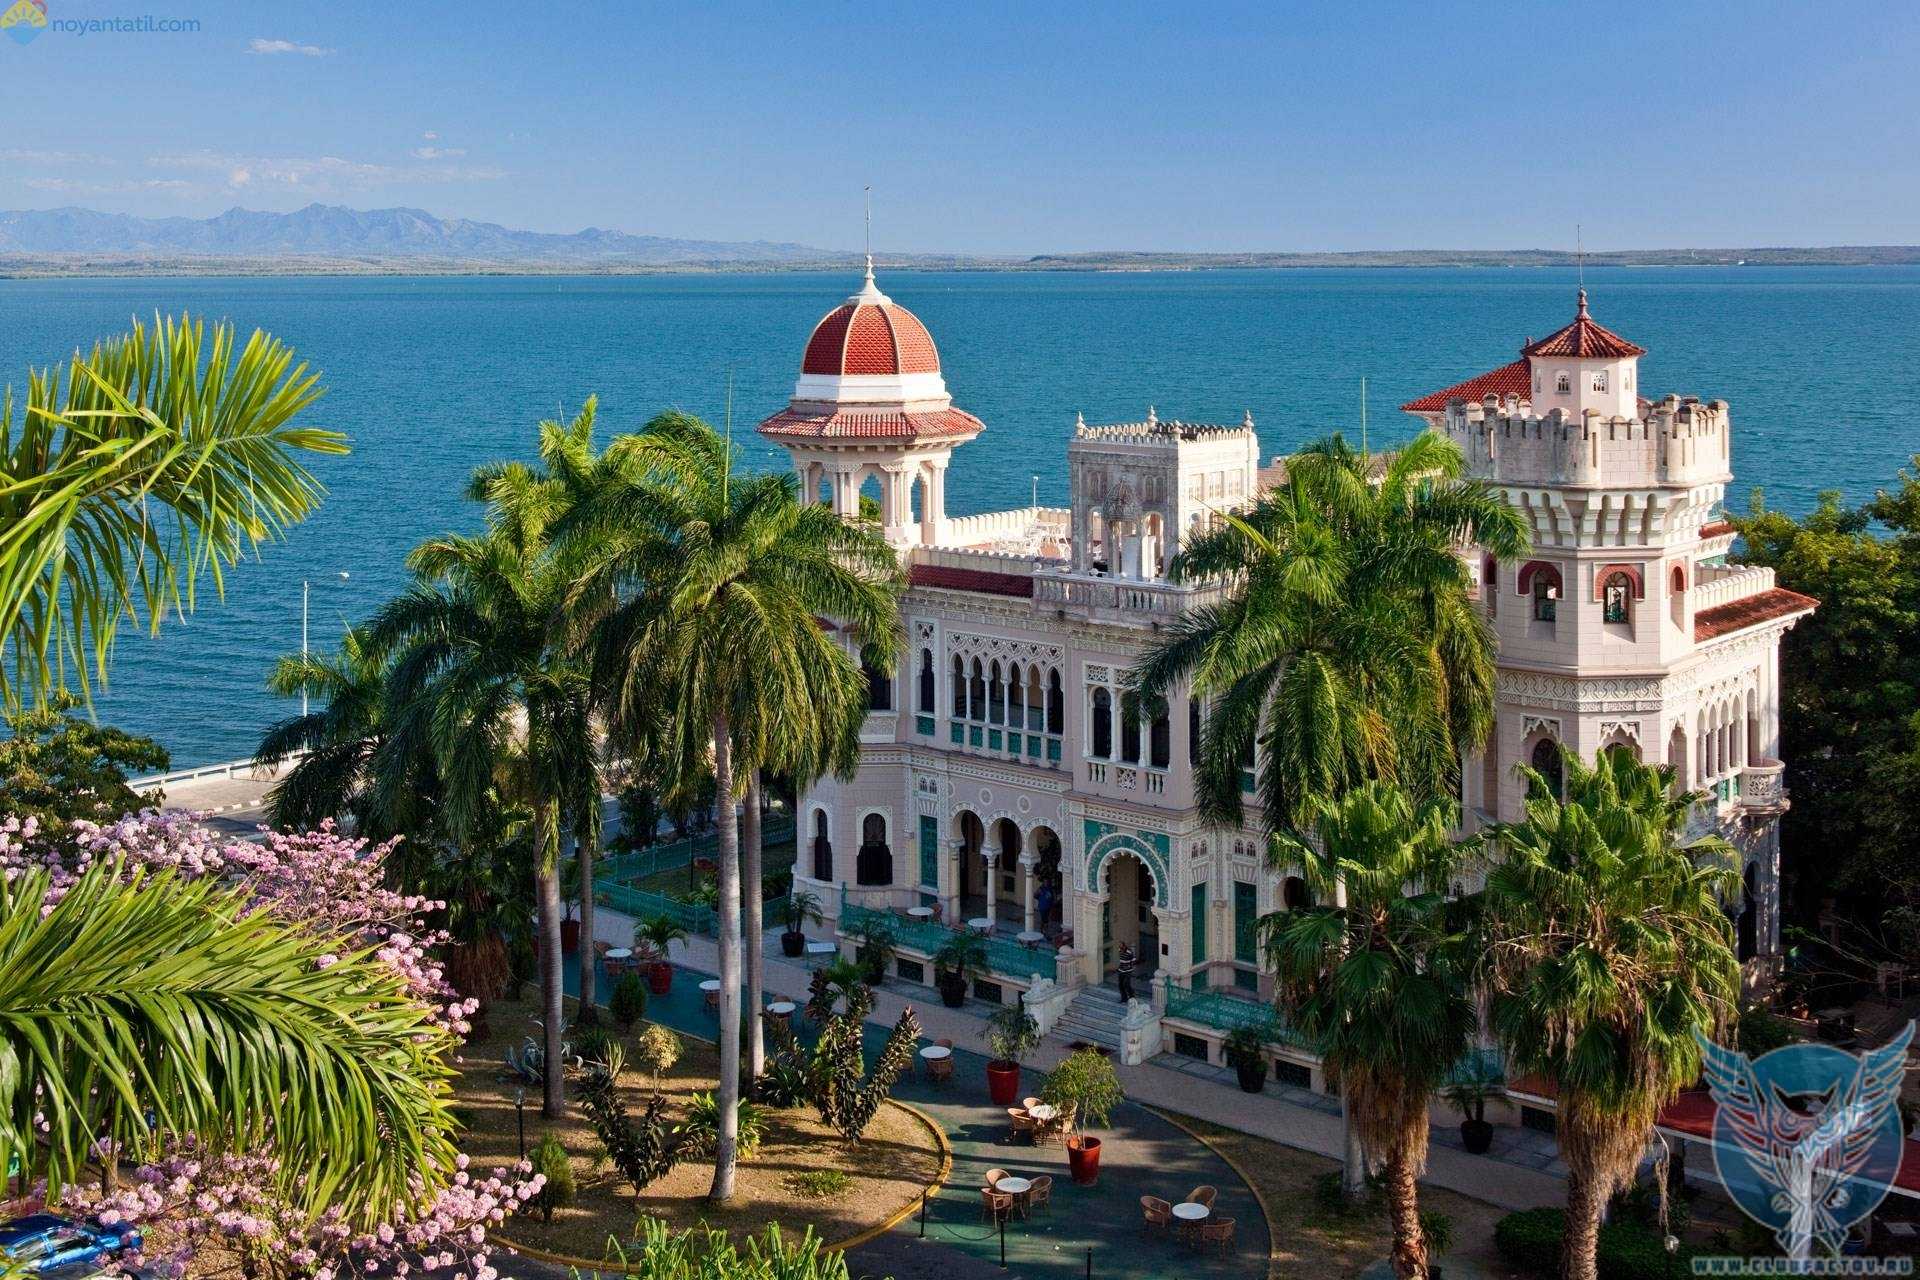 Артемиса – город в центре Кубы, куда туристы приезжают за спокойным, размеренным отдыхом Он может включать в себя дегустацию кубинской национальной кухни, неспешные прогулки по городу, экскурсии по старинным плантациям, садам и музеям